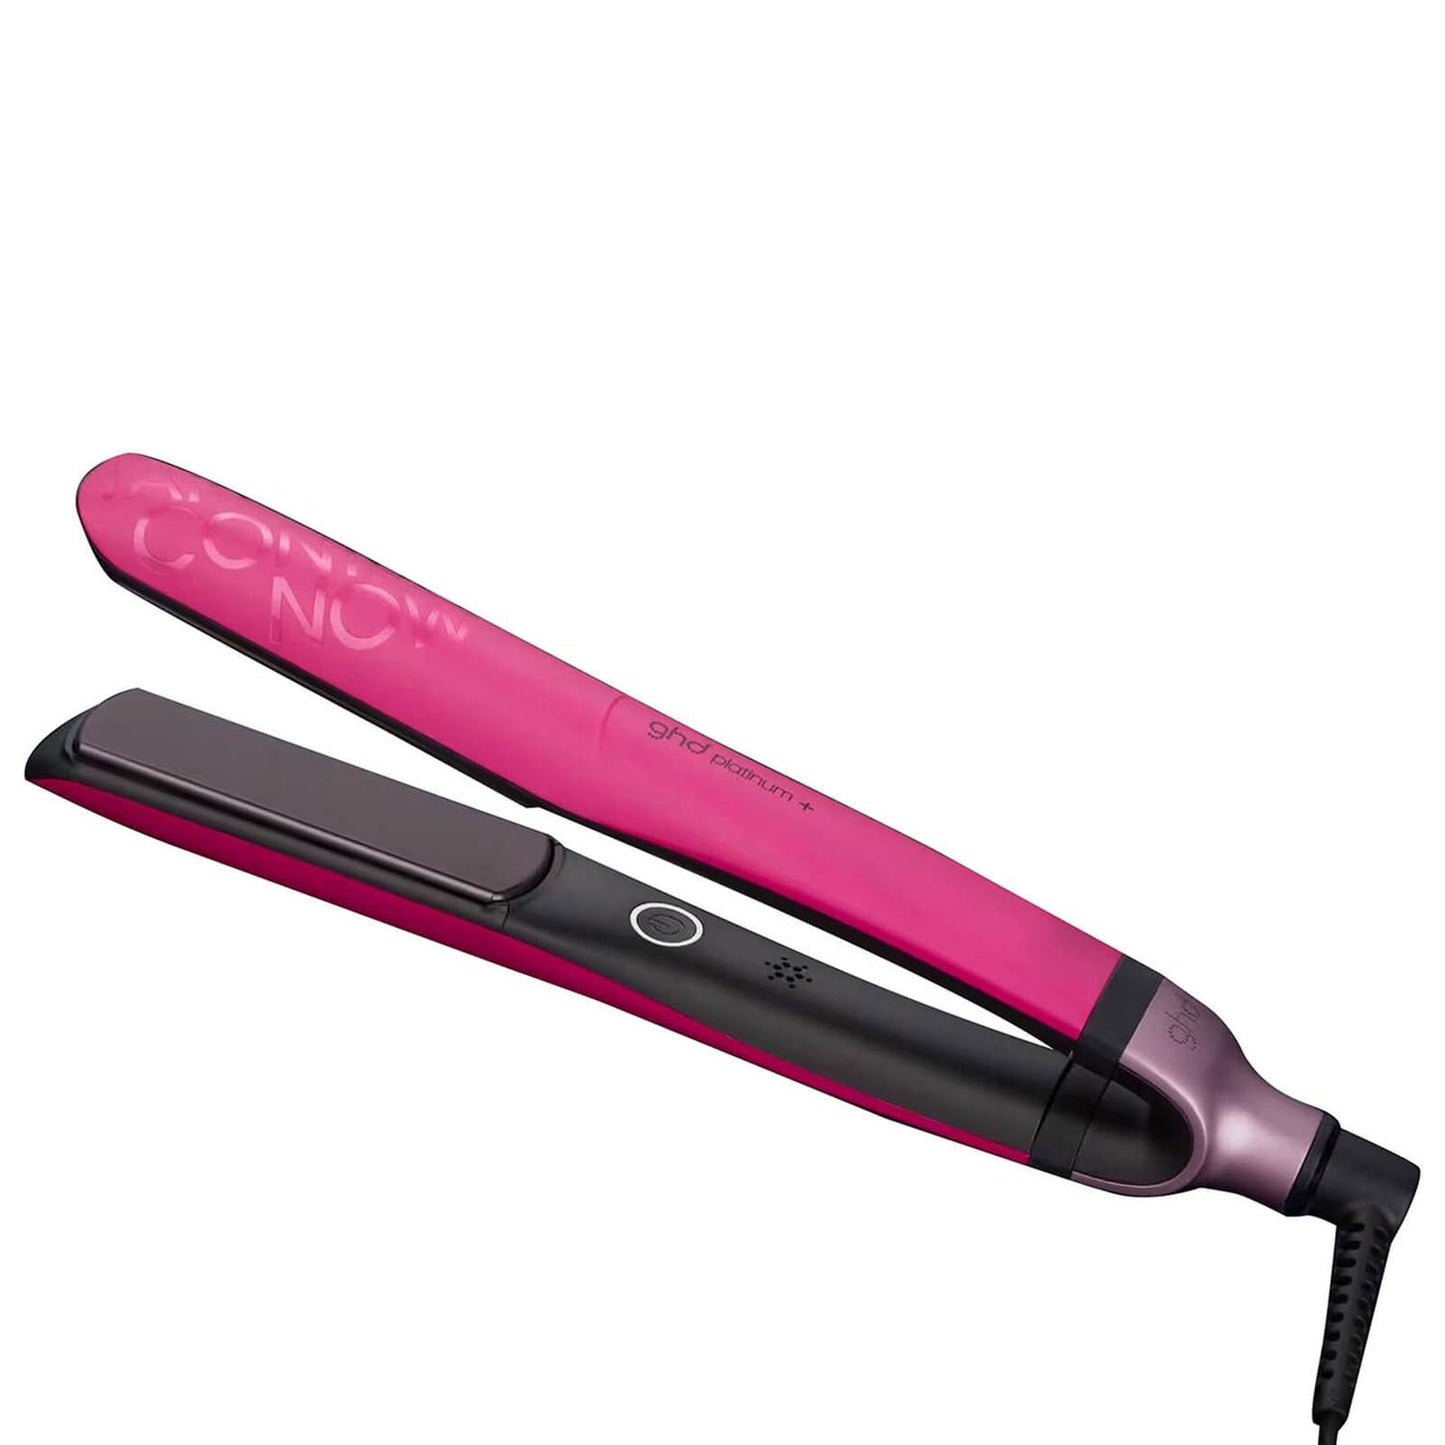 GHD PLATINUM + Hair Straightener - Pink